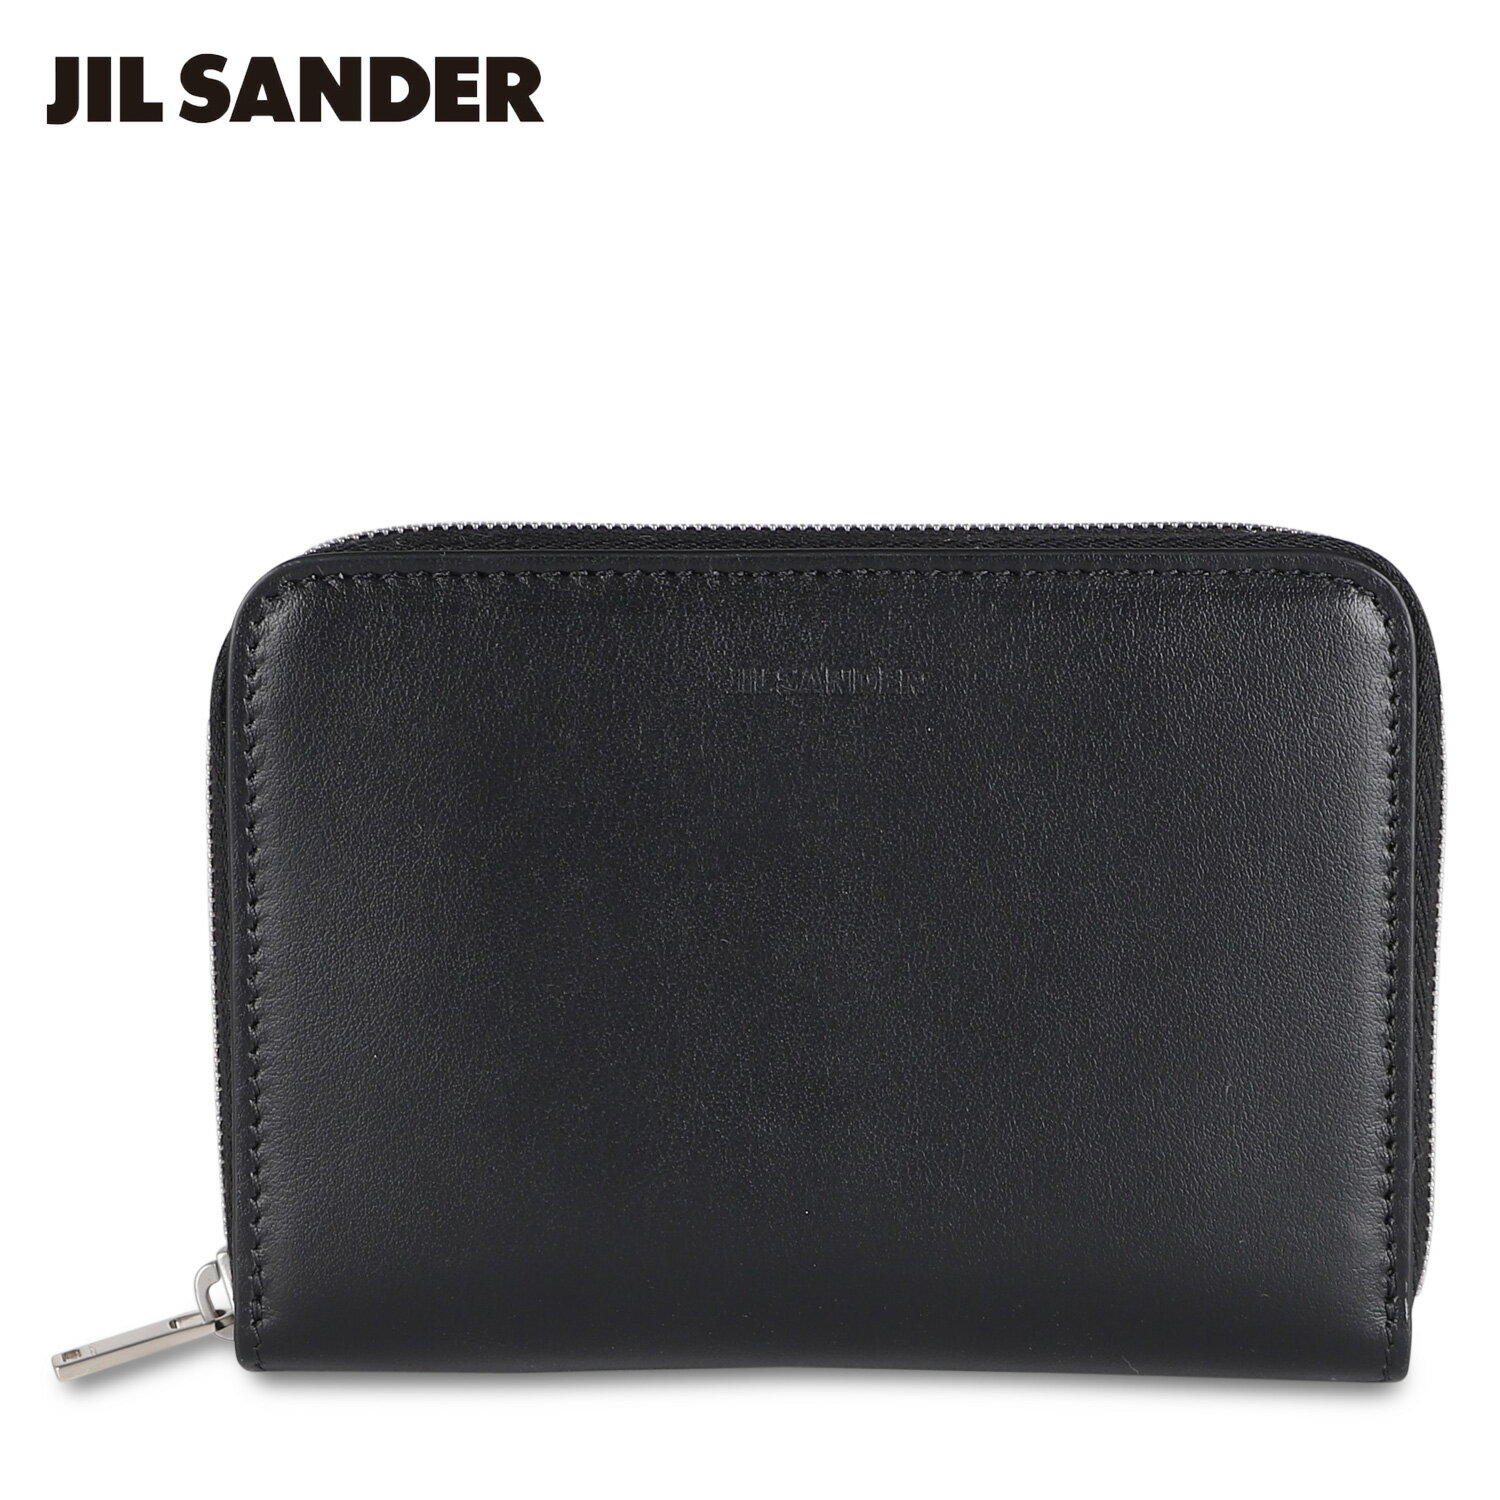 JIL SANDER ジルサンダー 財布 二つ折り財布 ポケット ジップ アラウンド ウォレット メンズ レディース 本革 ラウンドファスナー POCKET ZIP AROUND WALLET ブラック 黒 J25UI0003 P4966